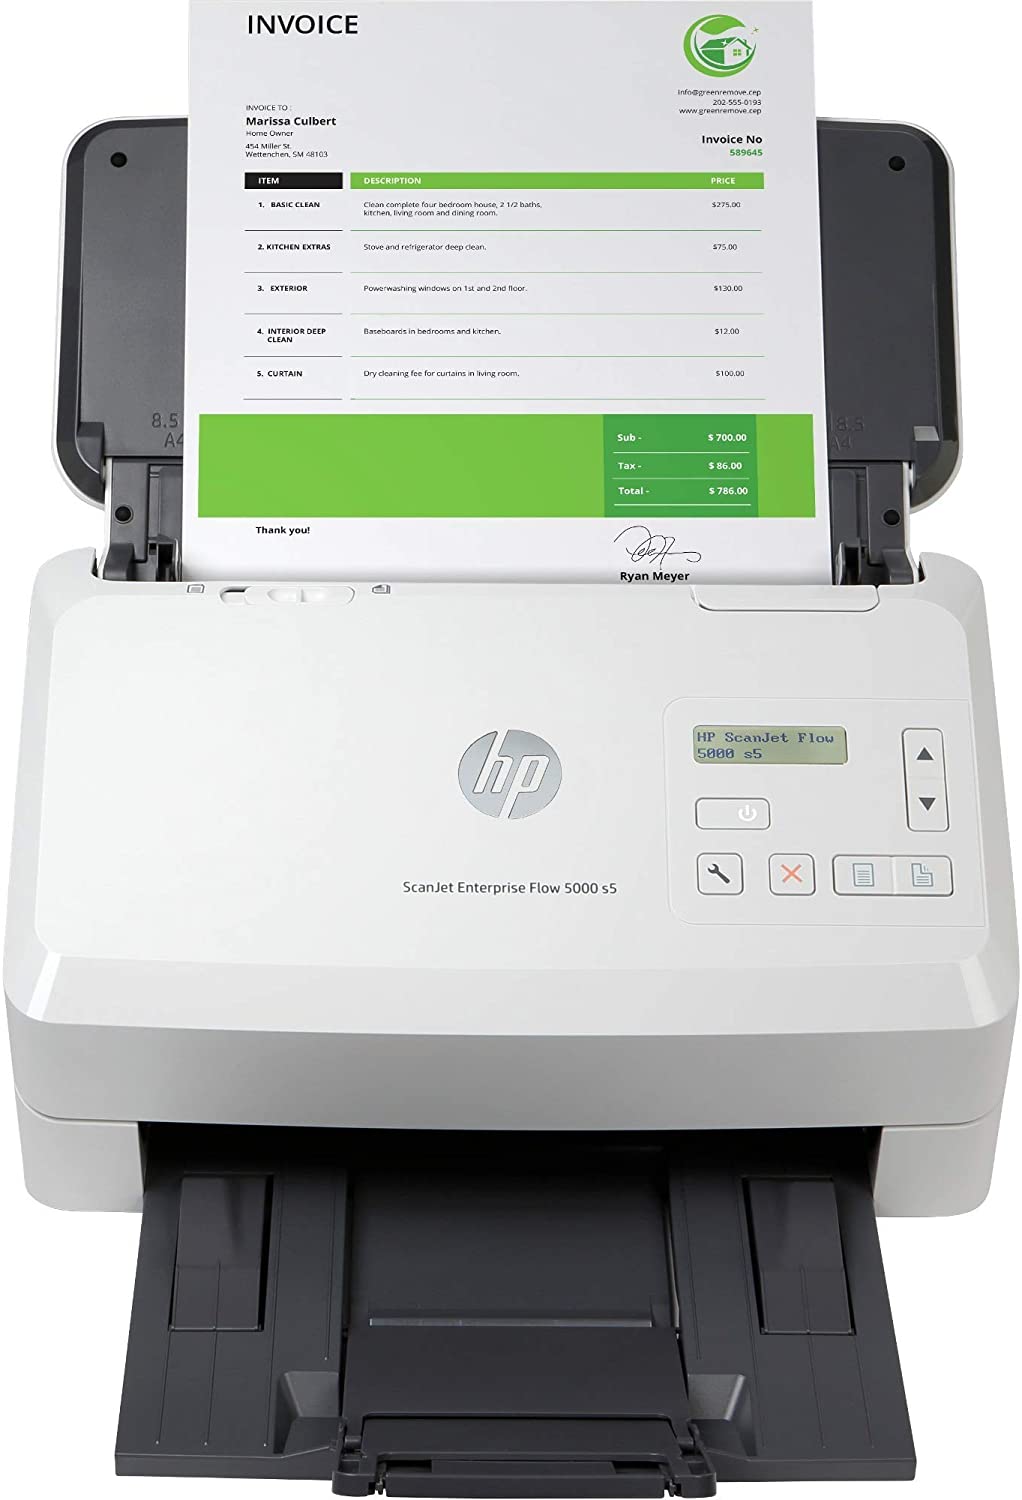 HP ScanJet Enterprise Flow 5000 s5 Document scanner